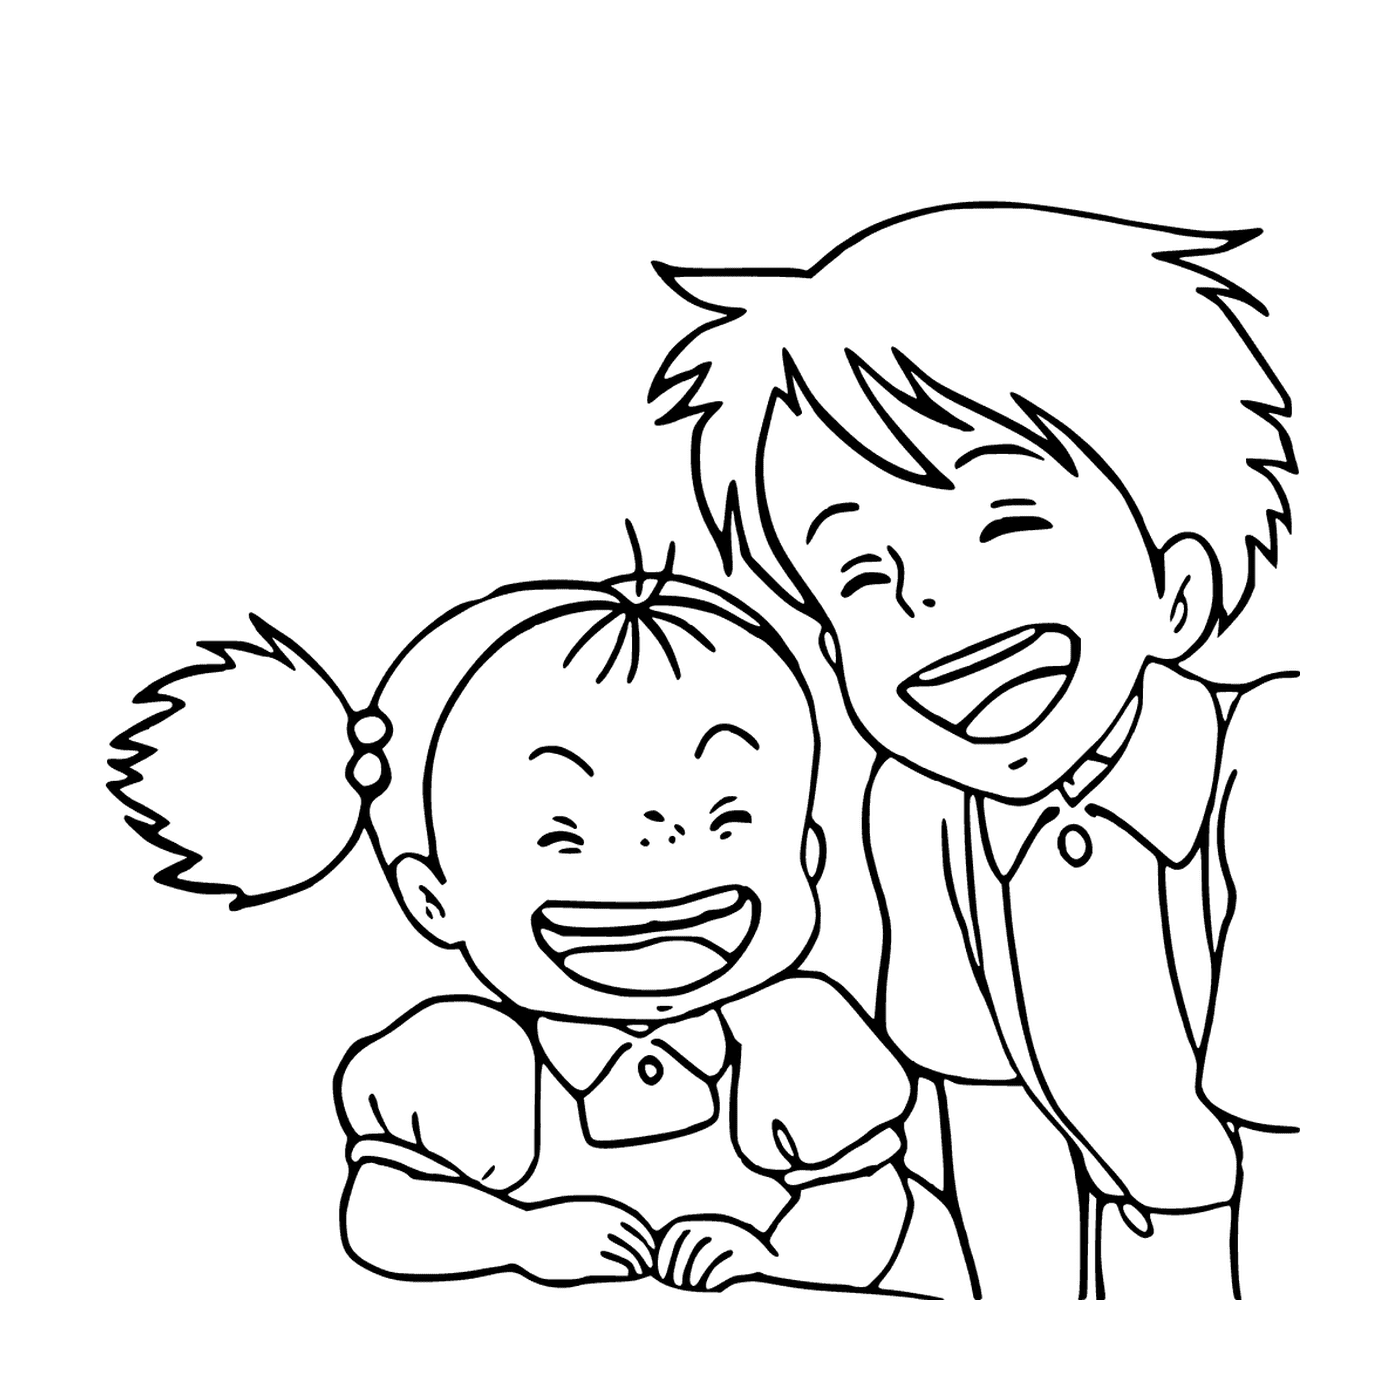   Garçon et petite fille riant ensemble 